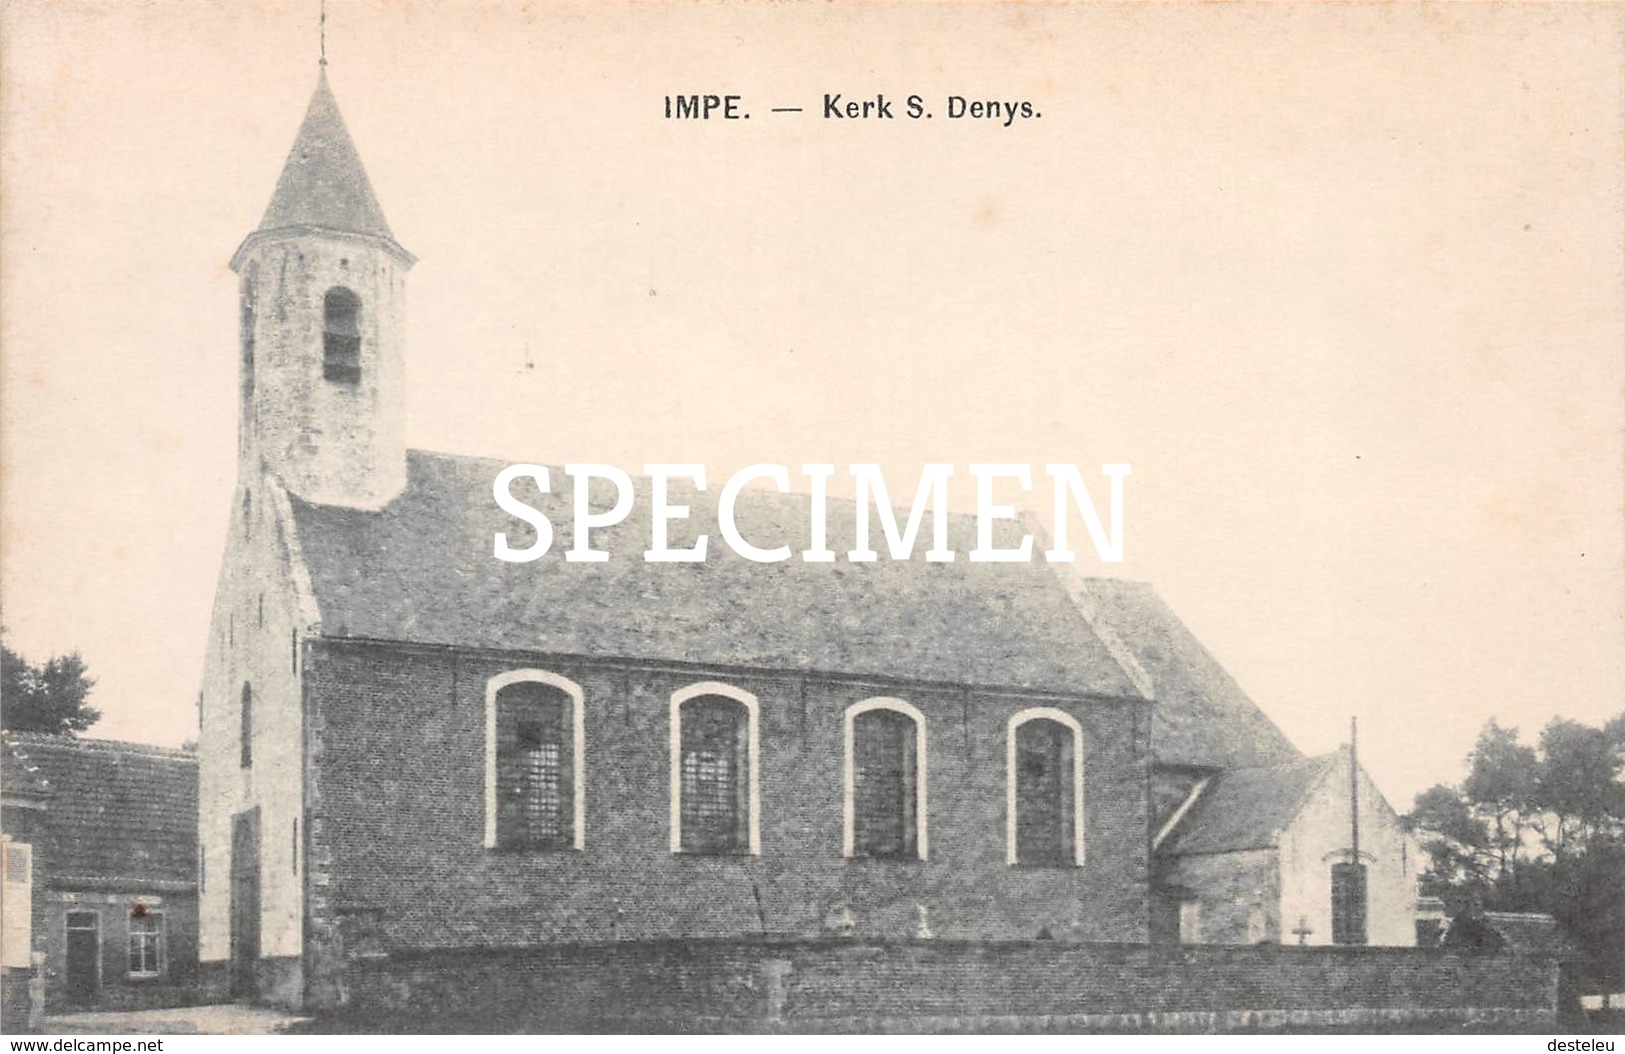 Kerk S. Denys - Impe - Lede